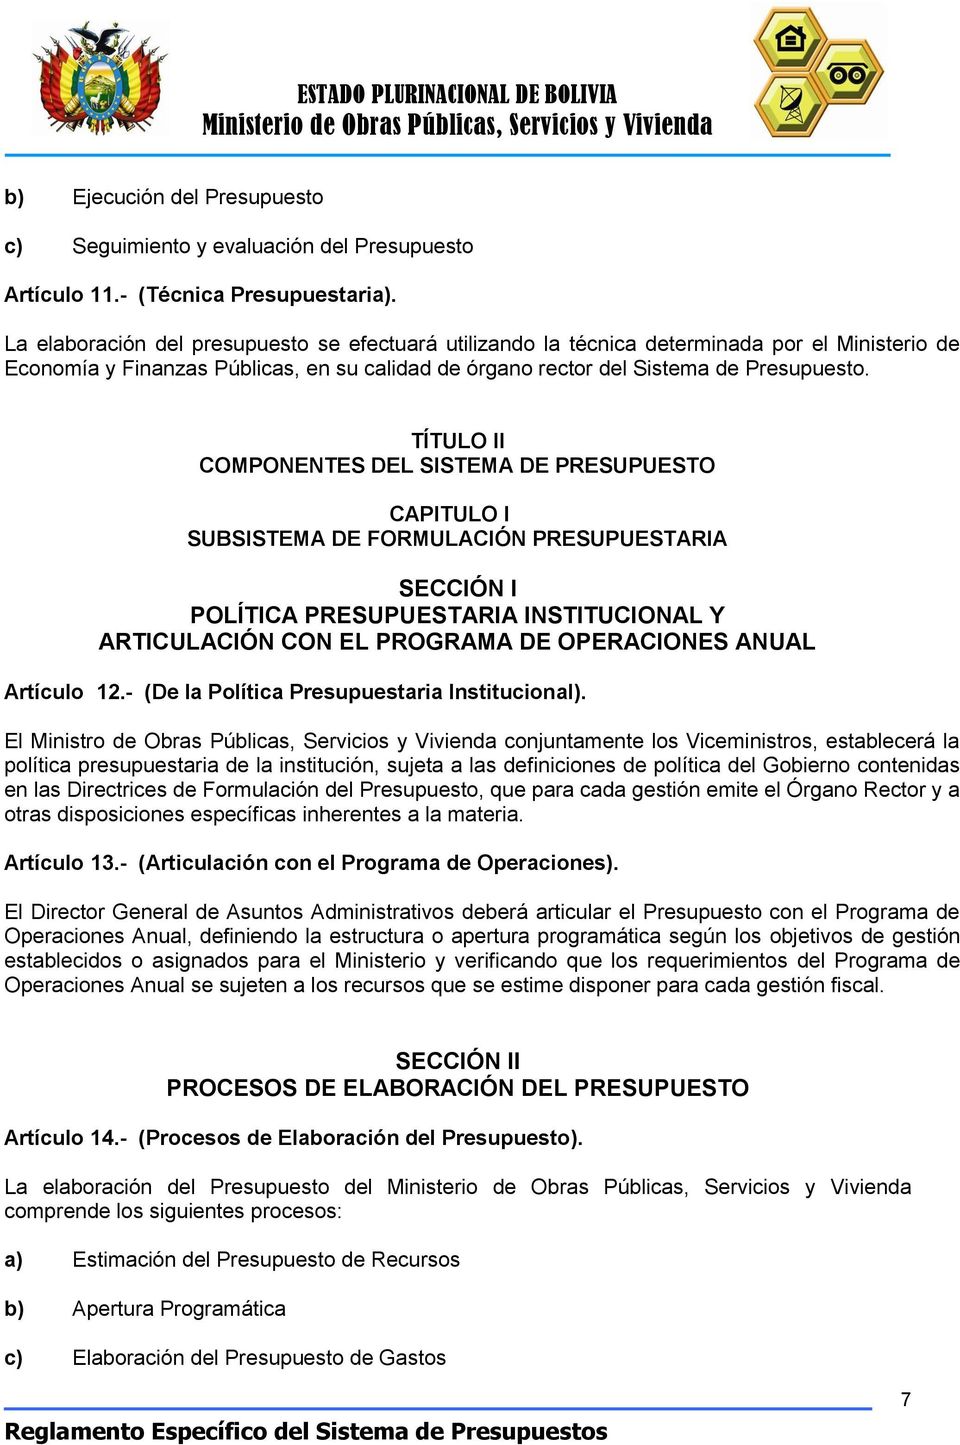 TÍTULO II COMPONENTES DEL SISTEMA DE PRESUPUESTO CAPITULO I SUBSISTEMA DE FORMULACIÓN PRESUPUESTARIA SECCIÓN I POLÍTICA PRESUPUESTARIA INSTITUCIONAL Y ARTICULACIÓN CON EL PROGRAMA DE OPERACIONES